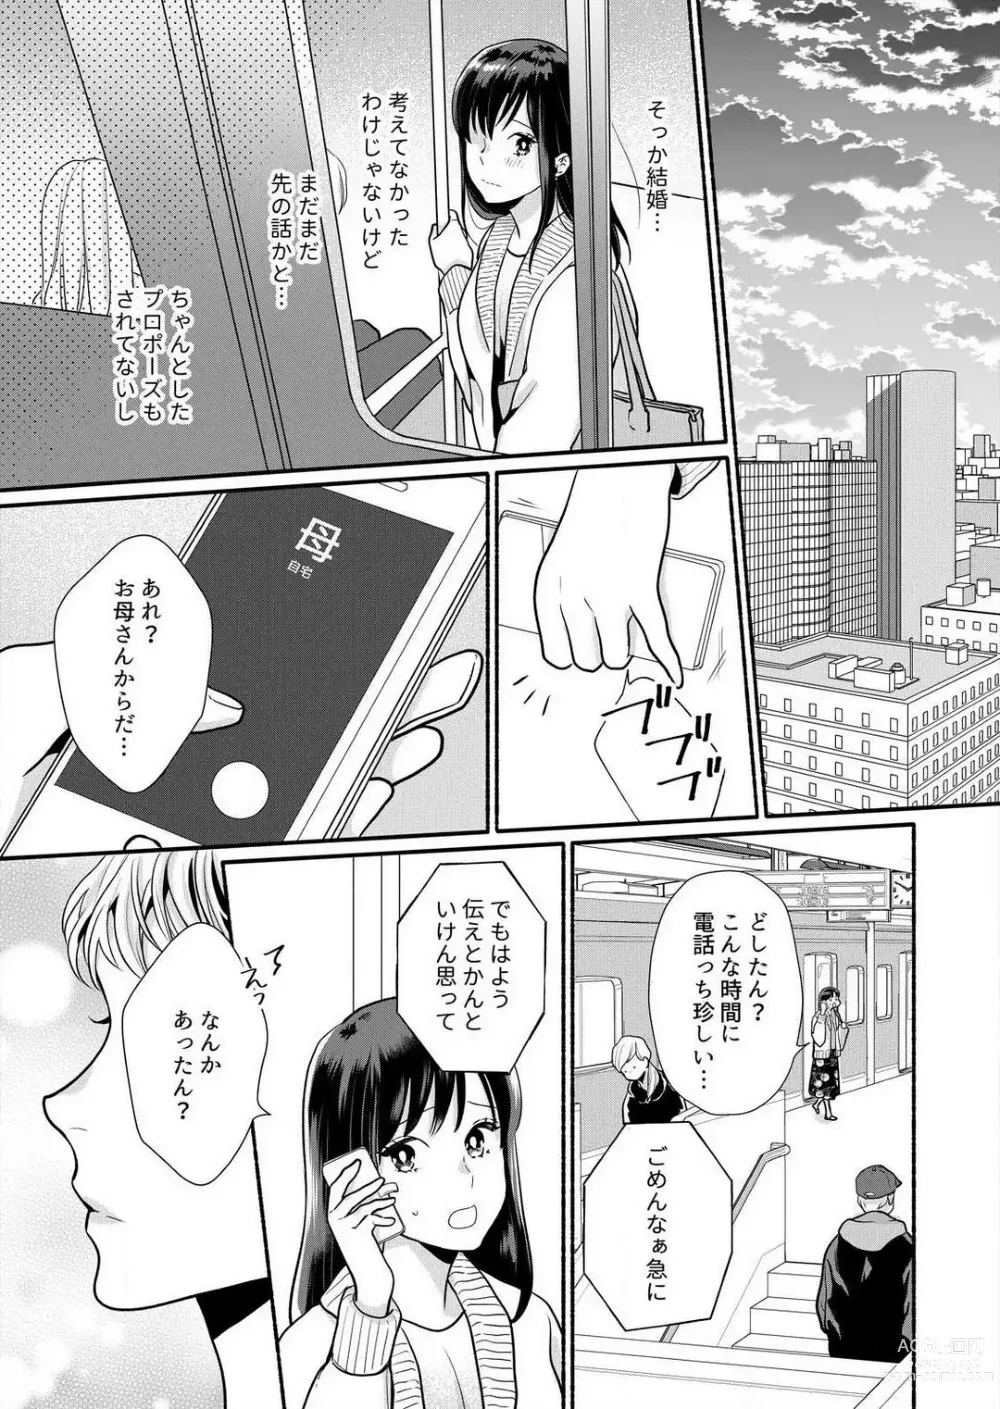 Page 183 of manga Suki Kawaii Guchagucha ni Shitai - Osananajimi wa Kojirase Sugiteru 1-8